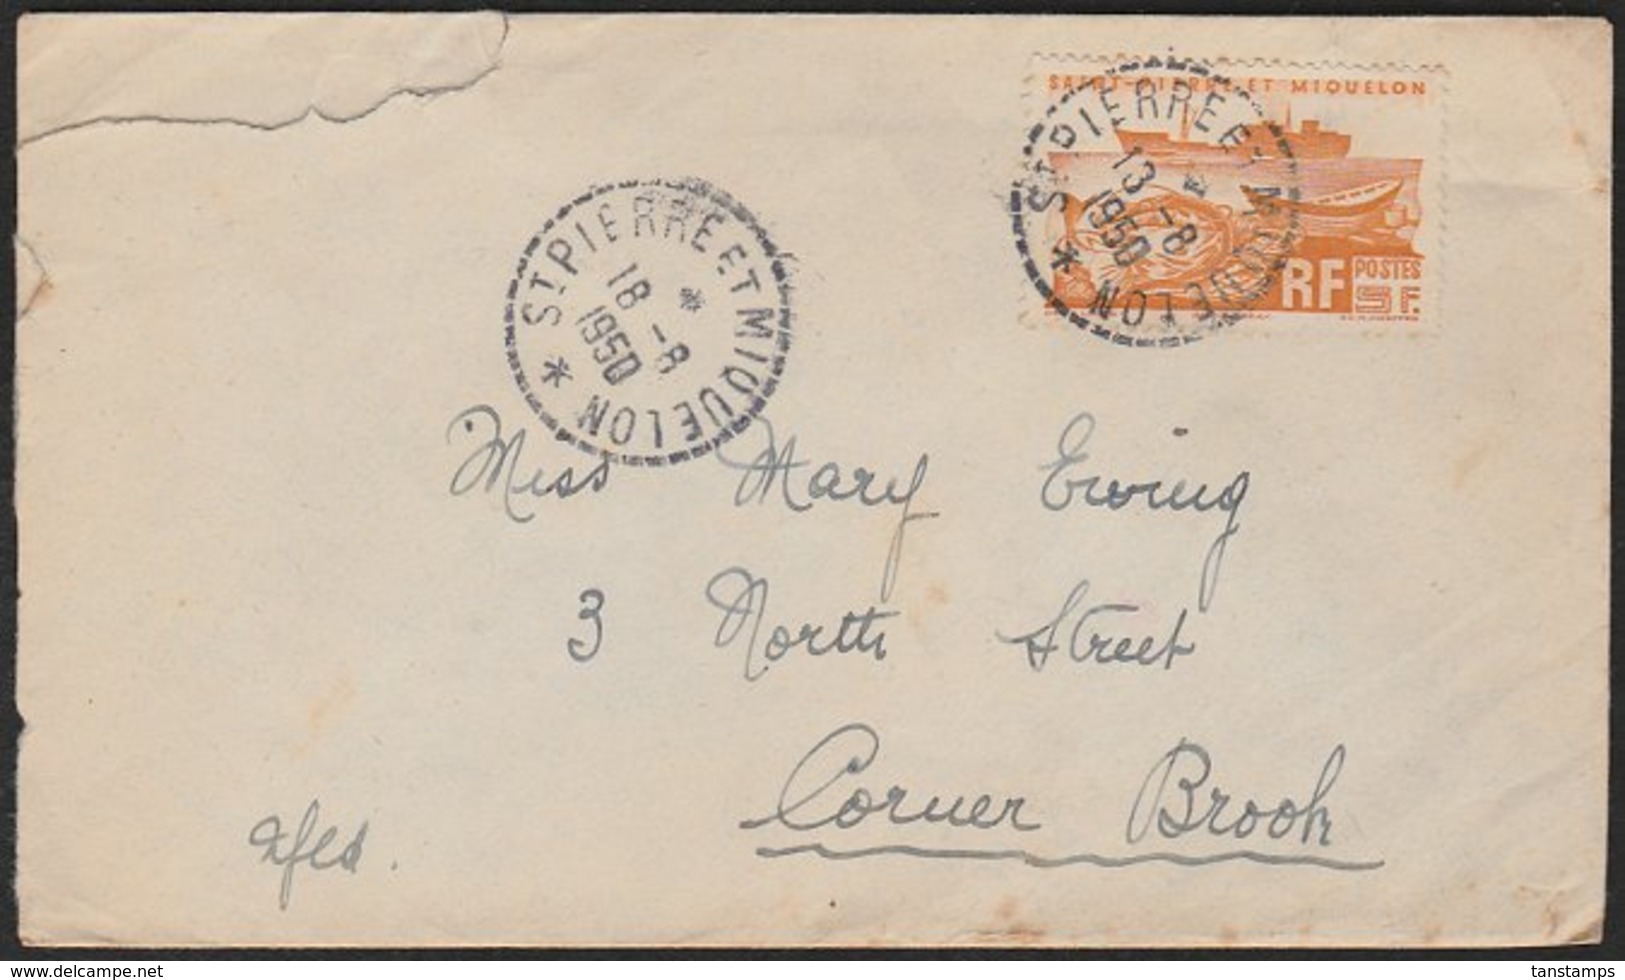 ST PIERRE & MIQUELON - NEWFOUNDLAND COVER 1950 - Briefe U. Dokumente